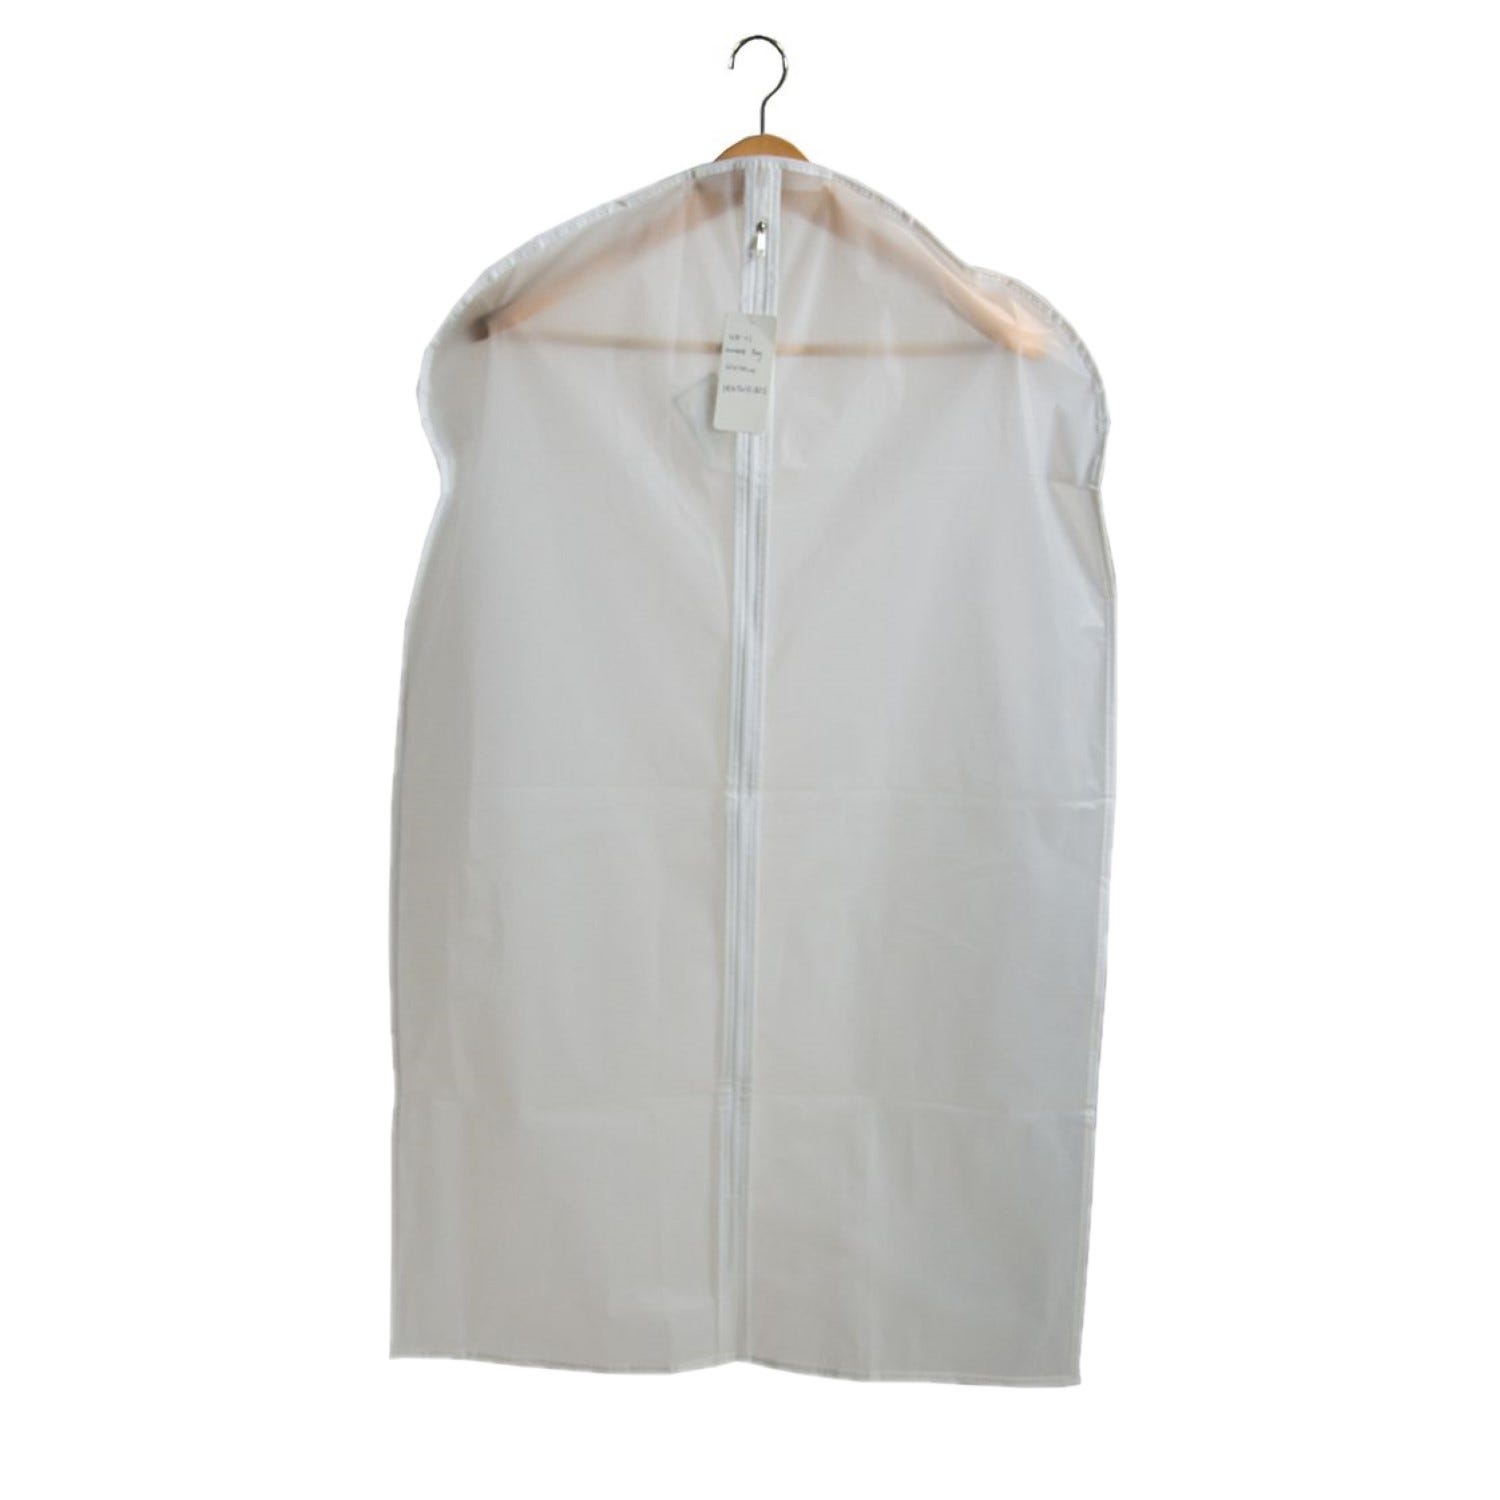 Housse pour vêtement blanche uni H.90 x l.60 cm